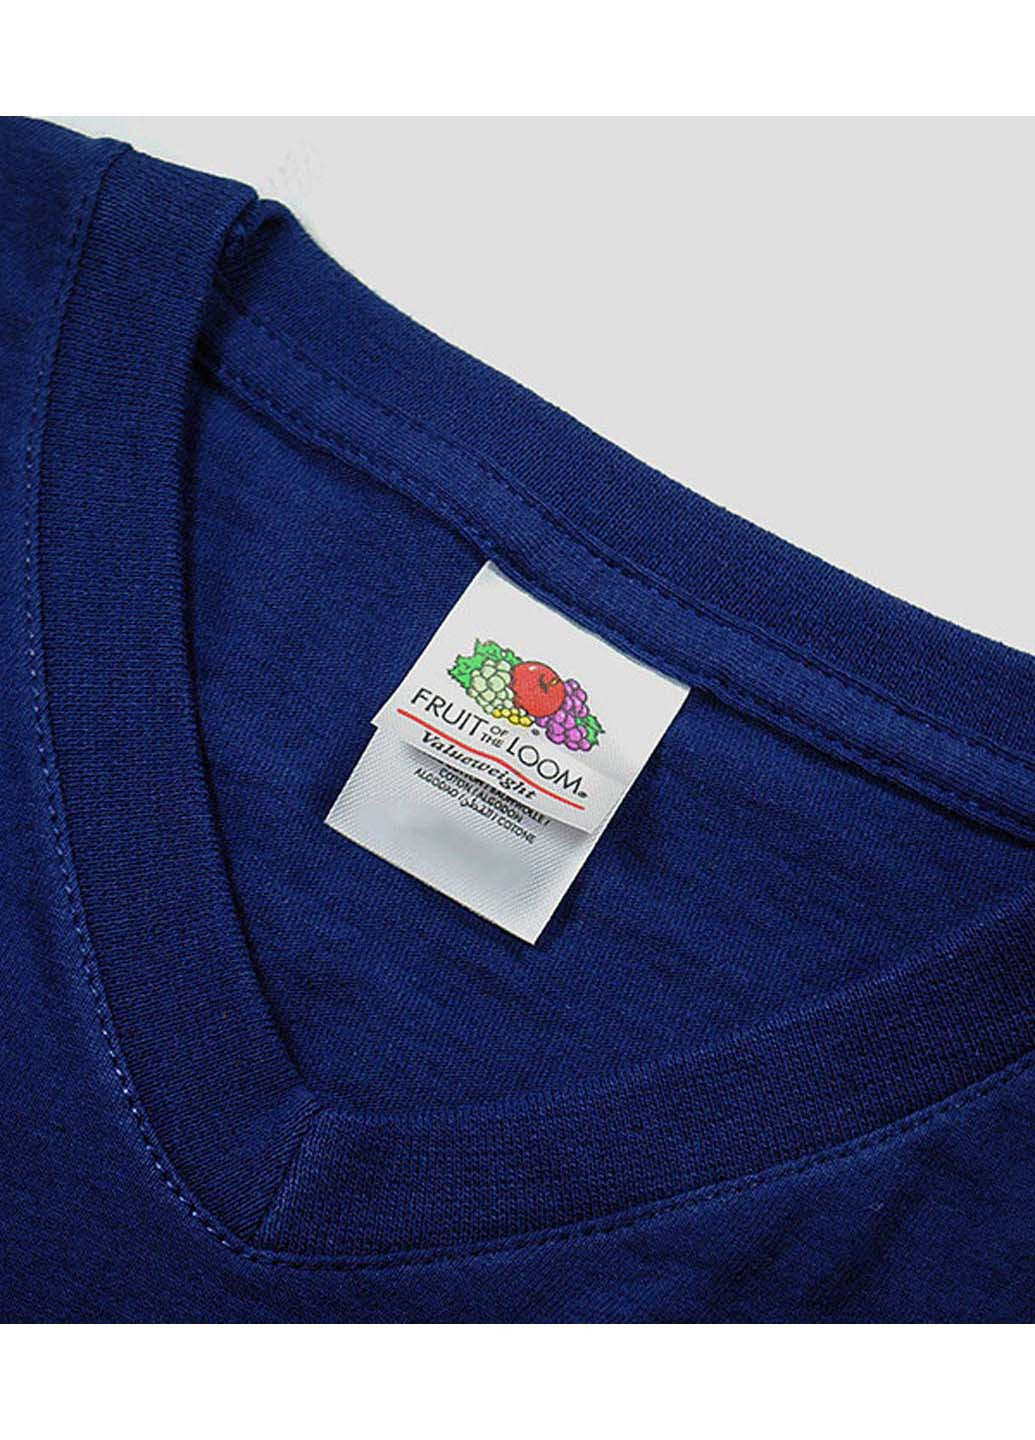 Темно-синяя футболка Fruit of the Loom Valueweight v-neck